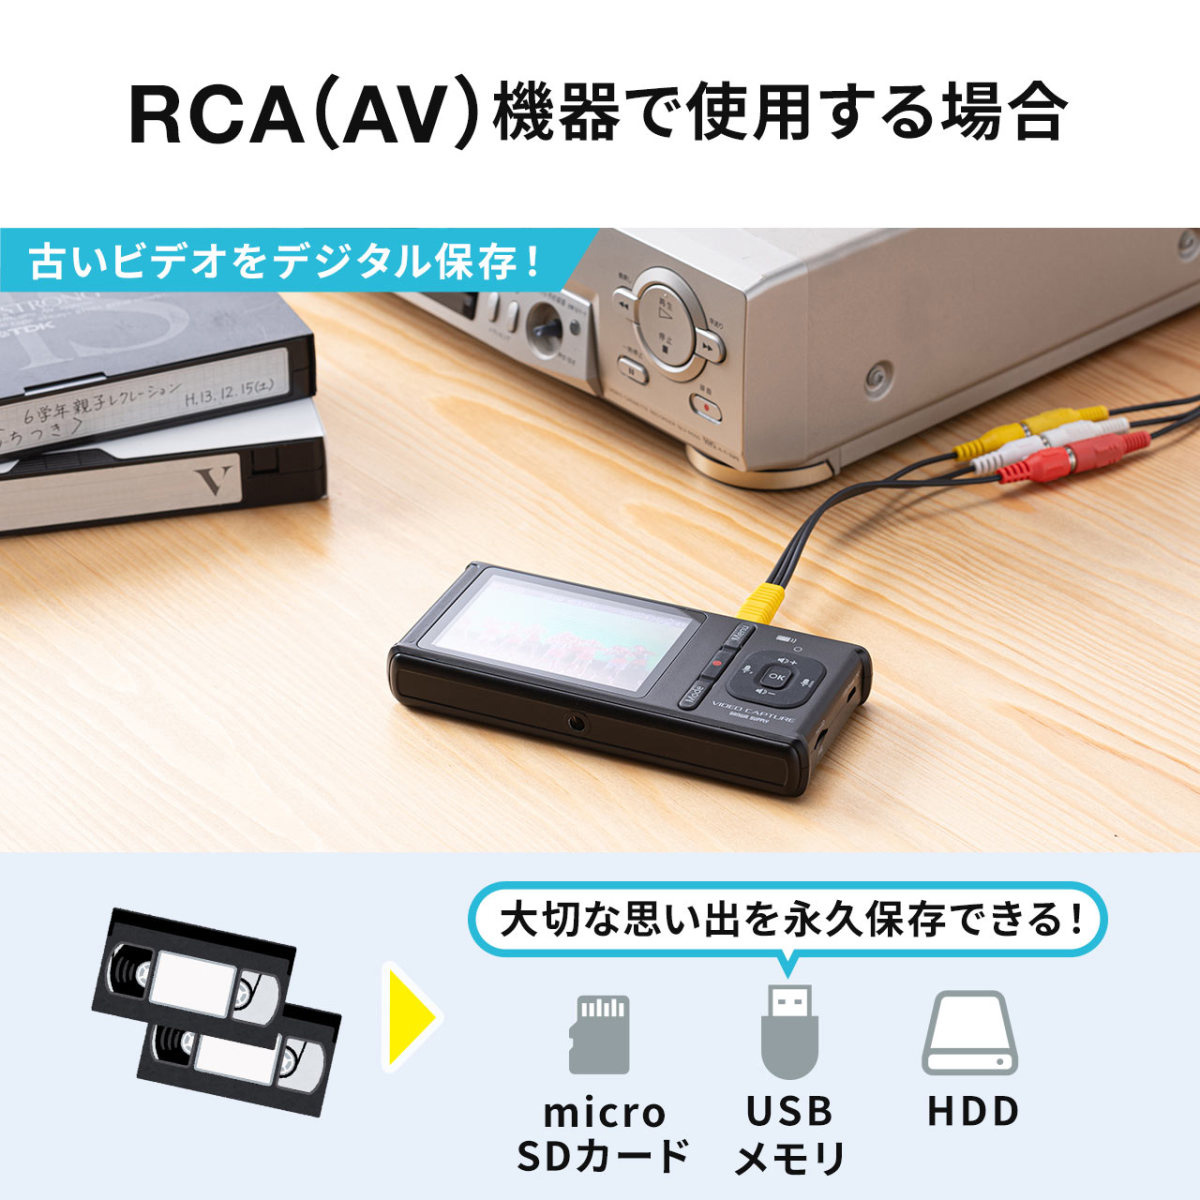 テレビ/映像機器 その他 人気商品ランキング ビデオキャプチャー HDMI AV入力 モニター付き 400 